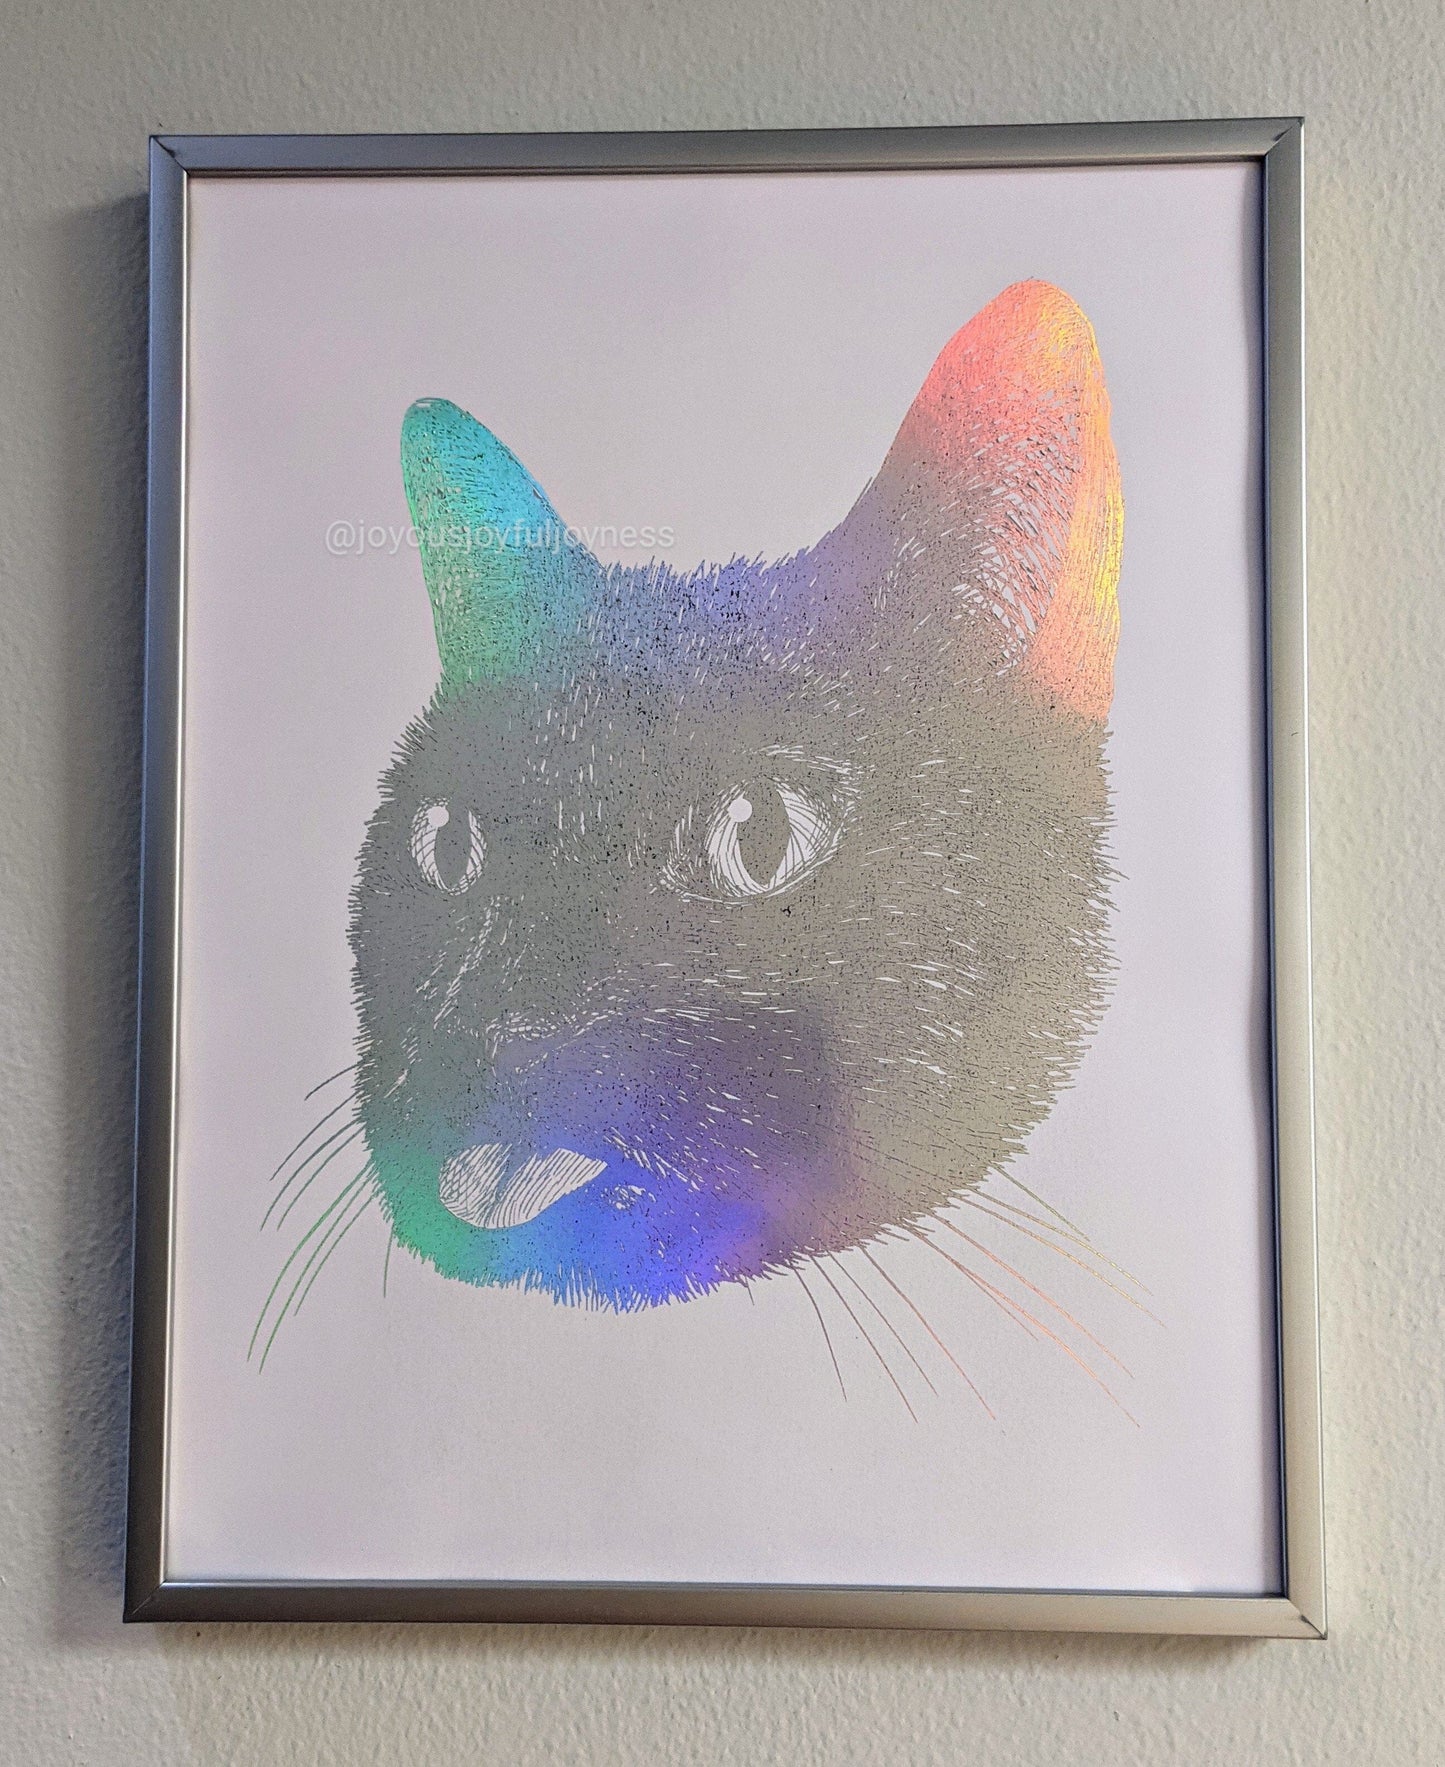 Kitten Portrait Drawings Posters, Prints, & Visual Artwork JoyousJoyfulJoyness 